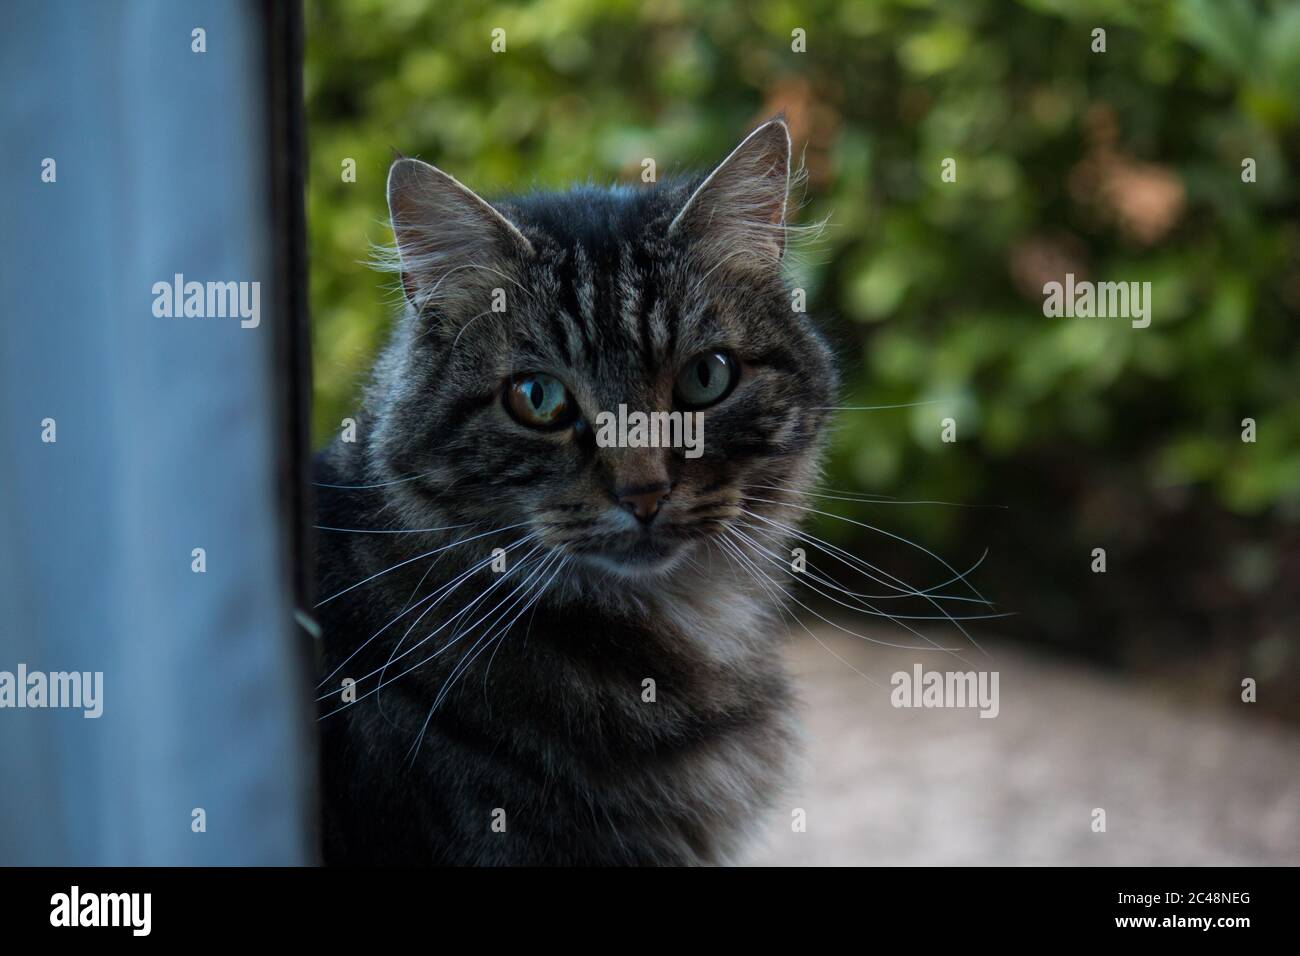 Retrato de un gato tabby con heterocromia en su ojo derecho Foto de stock